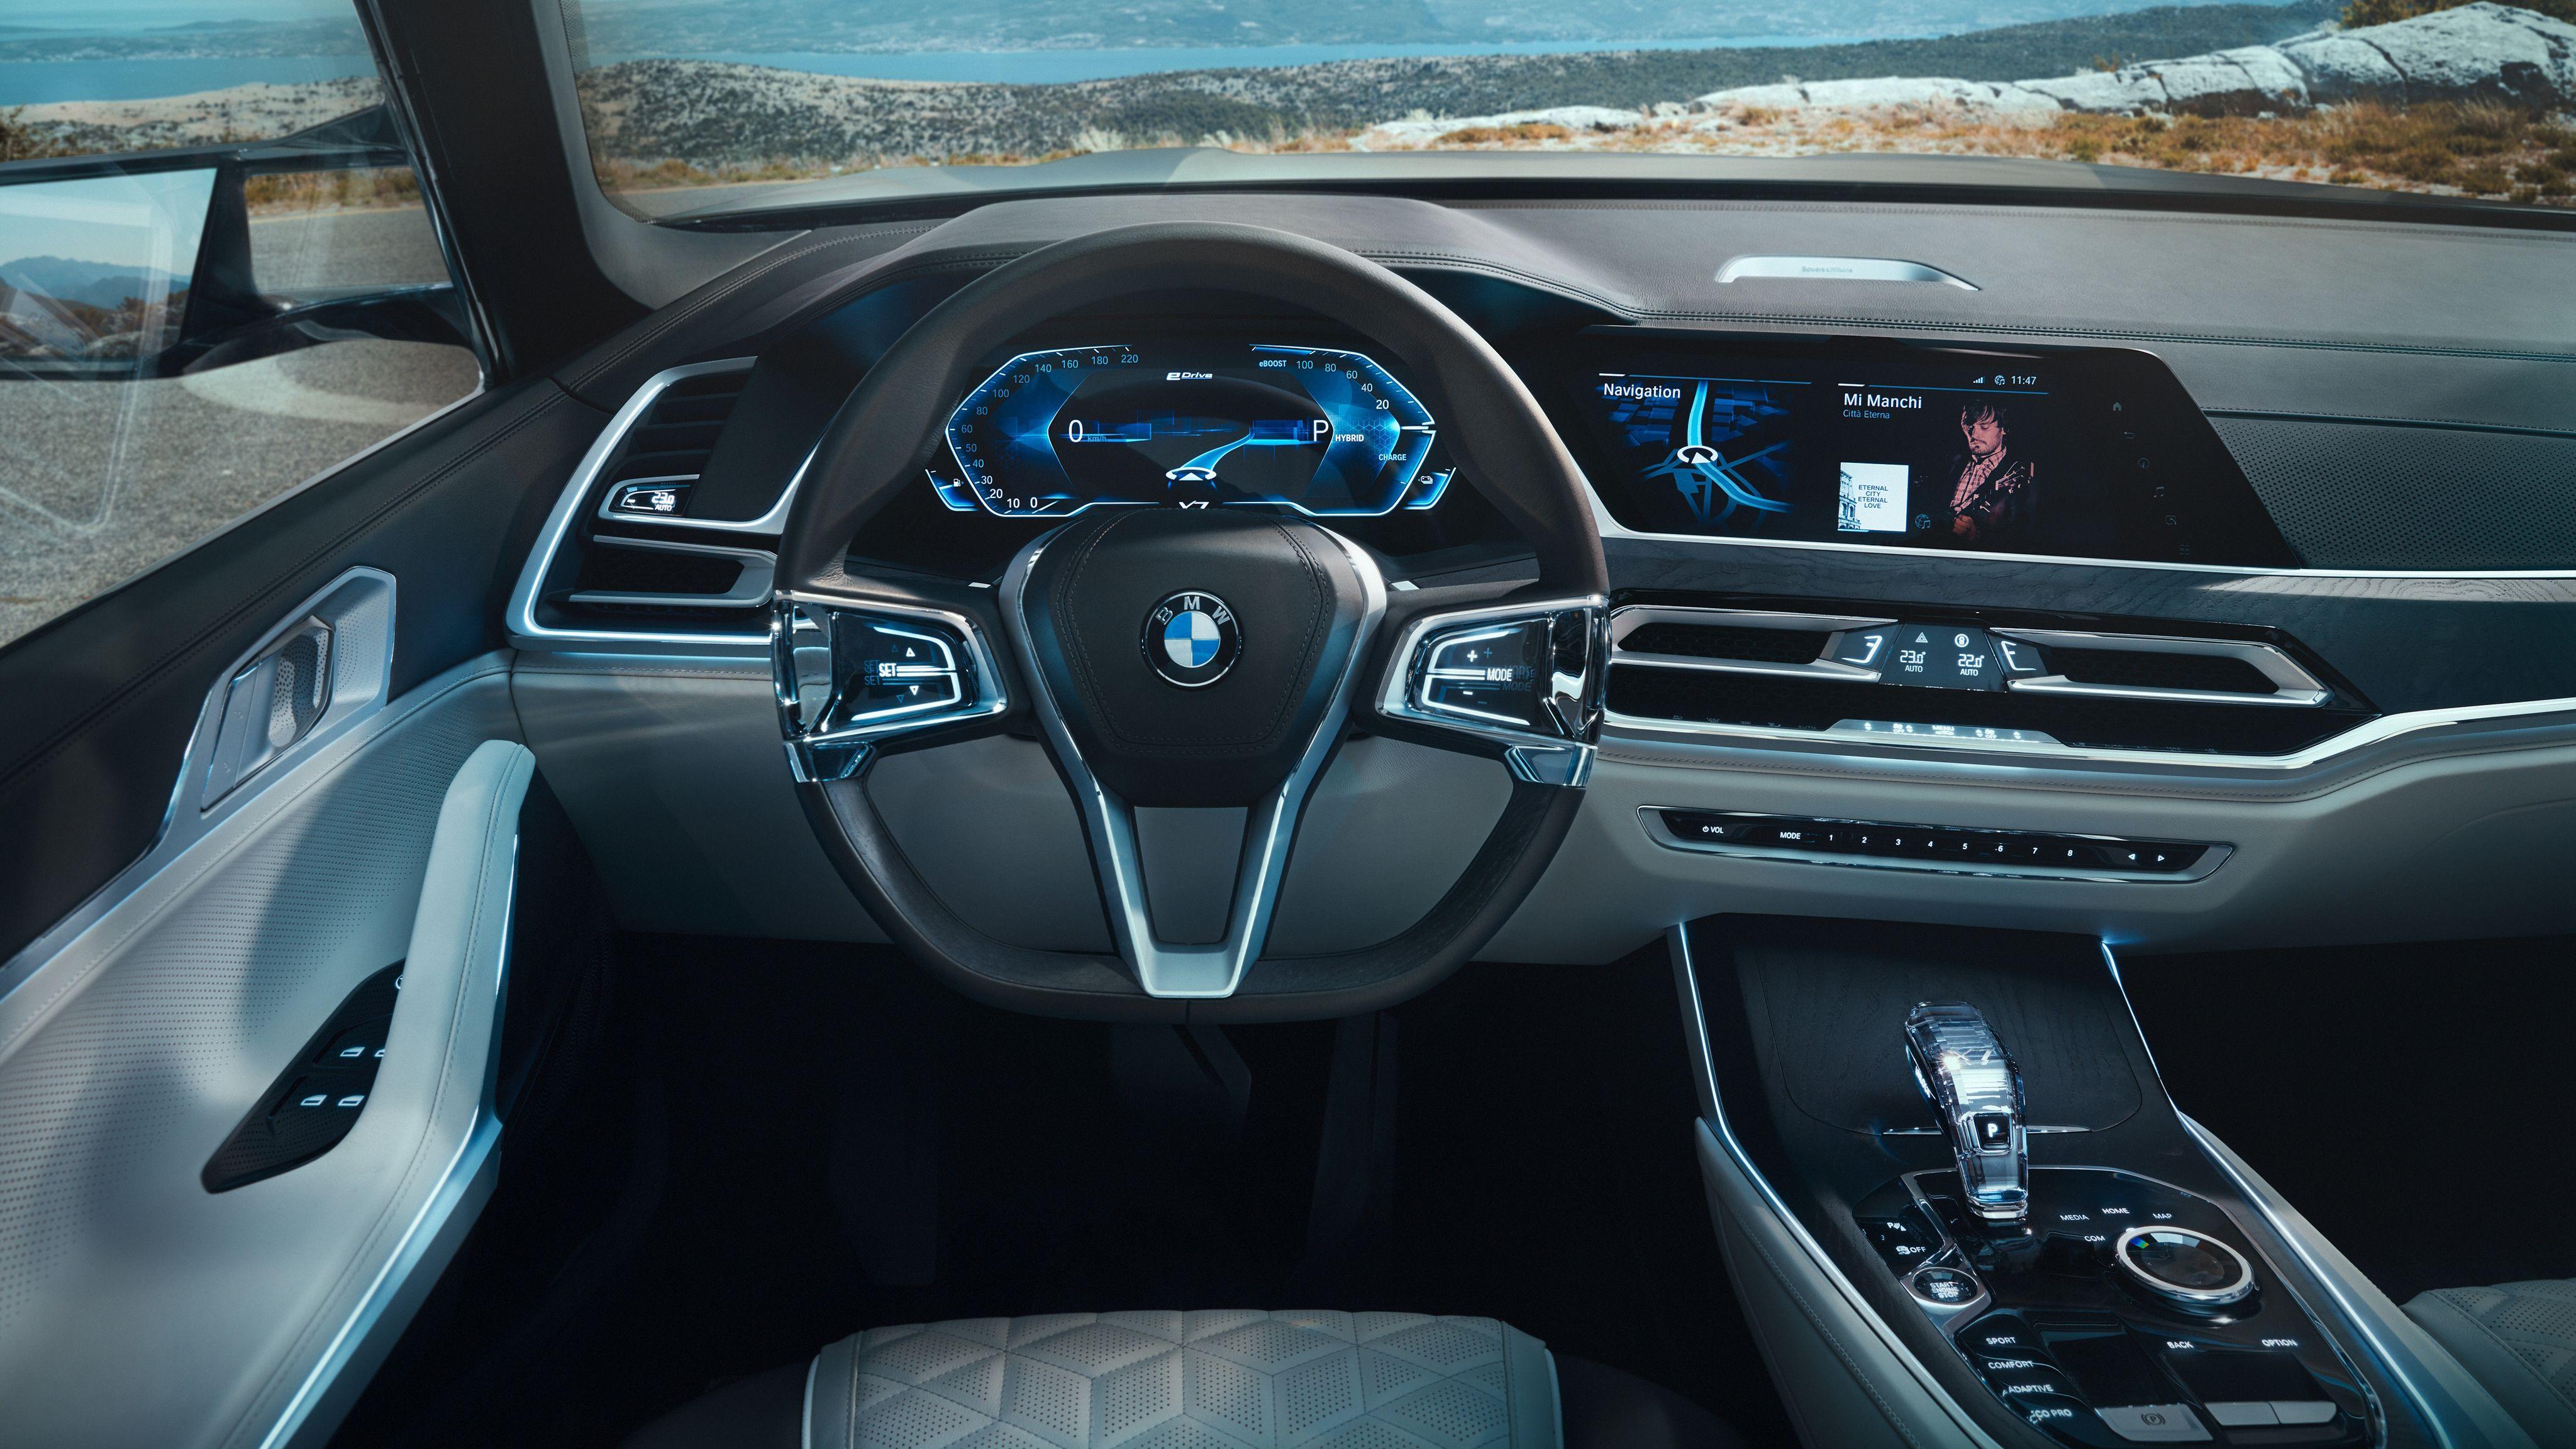 BMW Concept X7 iPerformance Interior 4K Wallpaper. HD Car Wallpaper